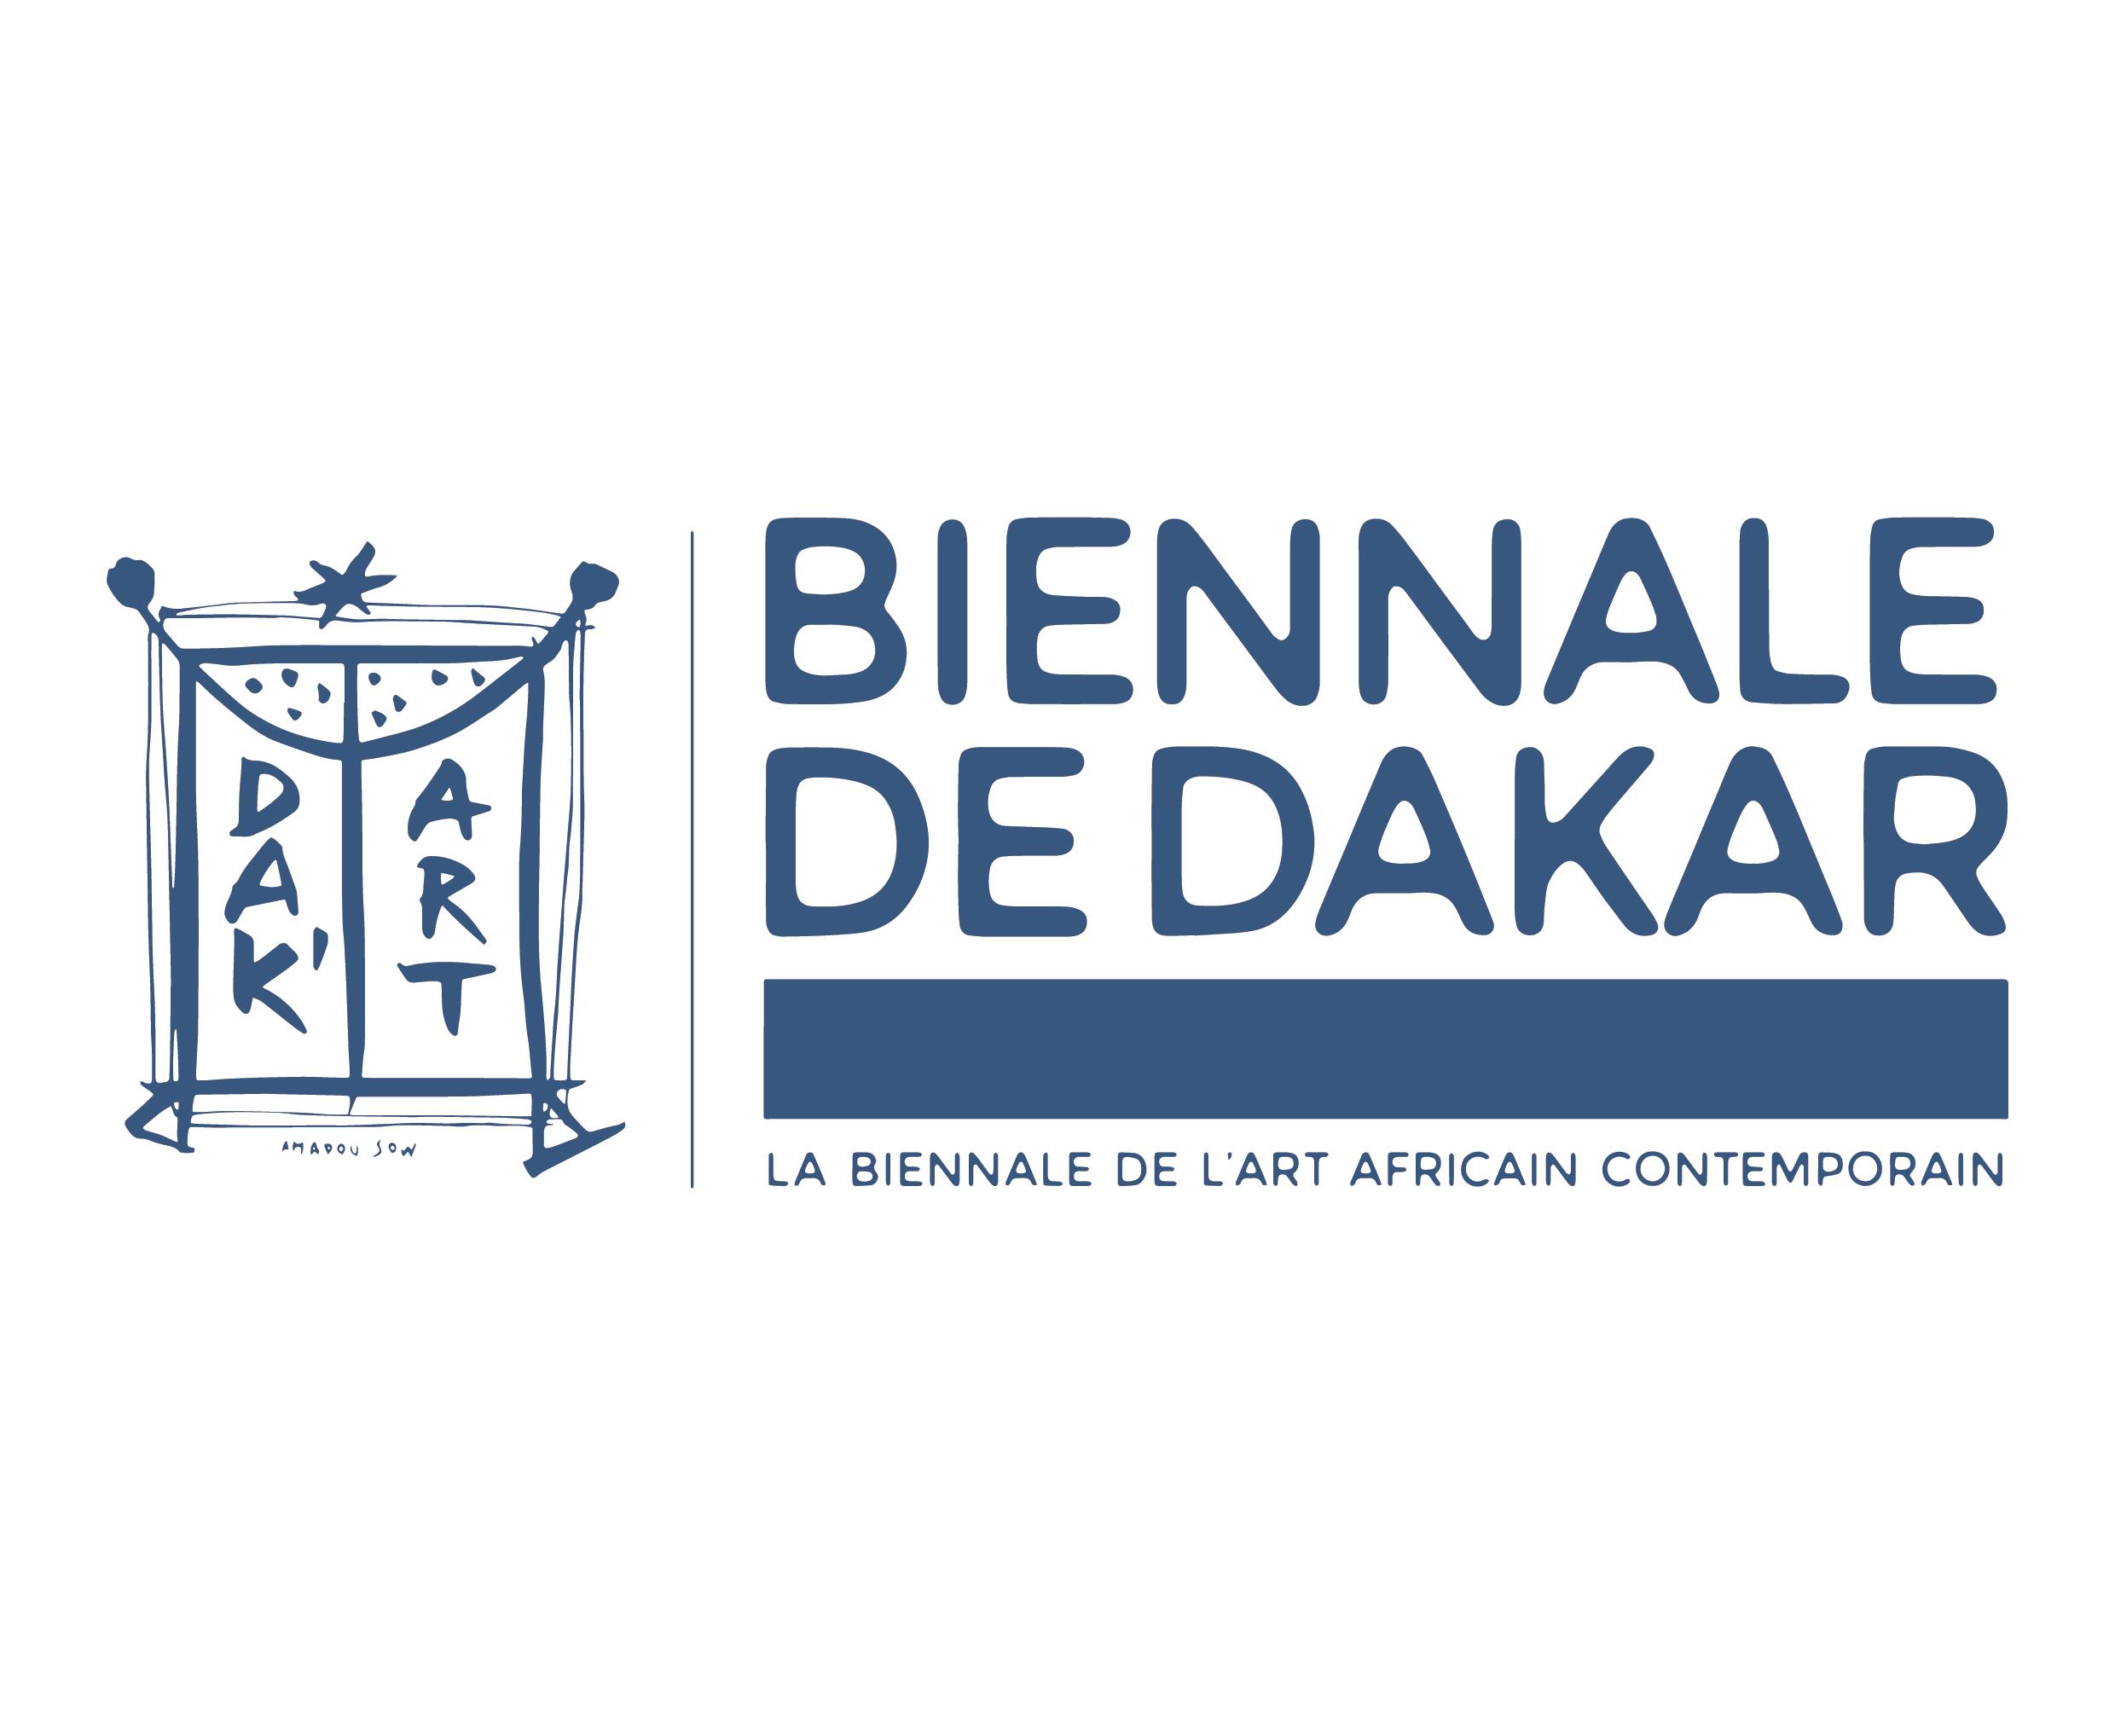 Dakar: La 14éme édition de la Biennale de l'art africain contemporain s'ouvre le 19 mai